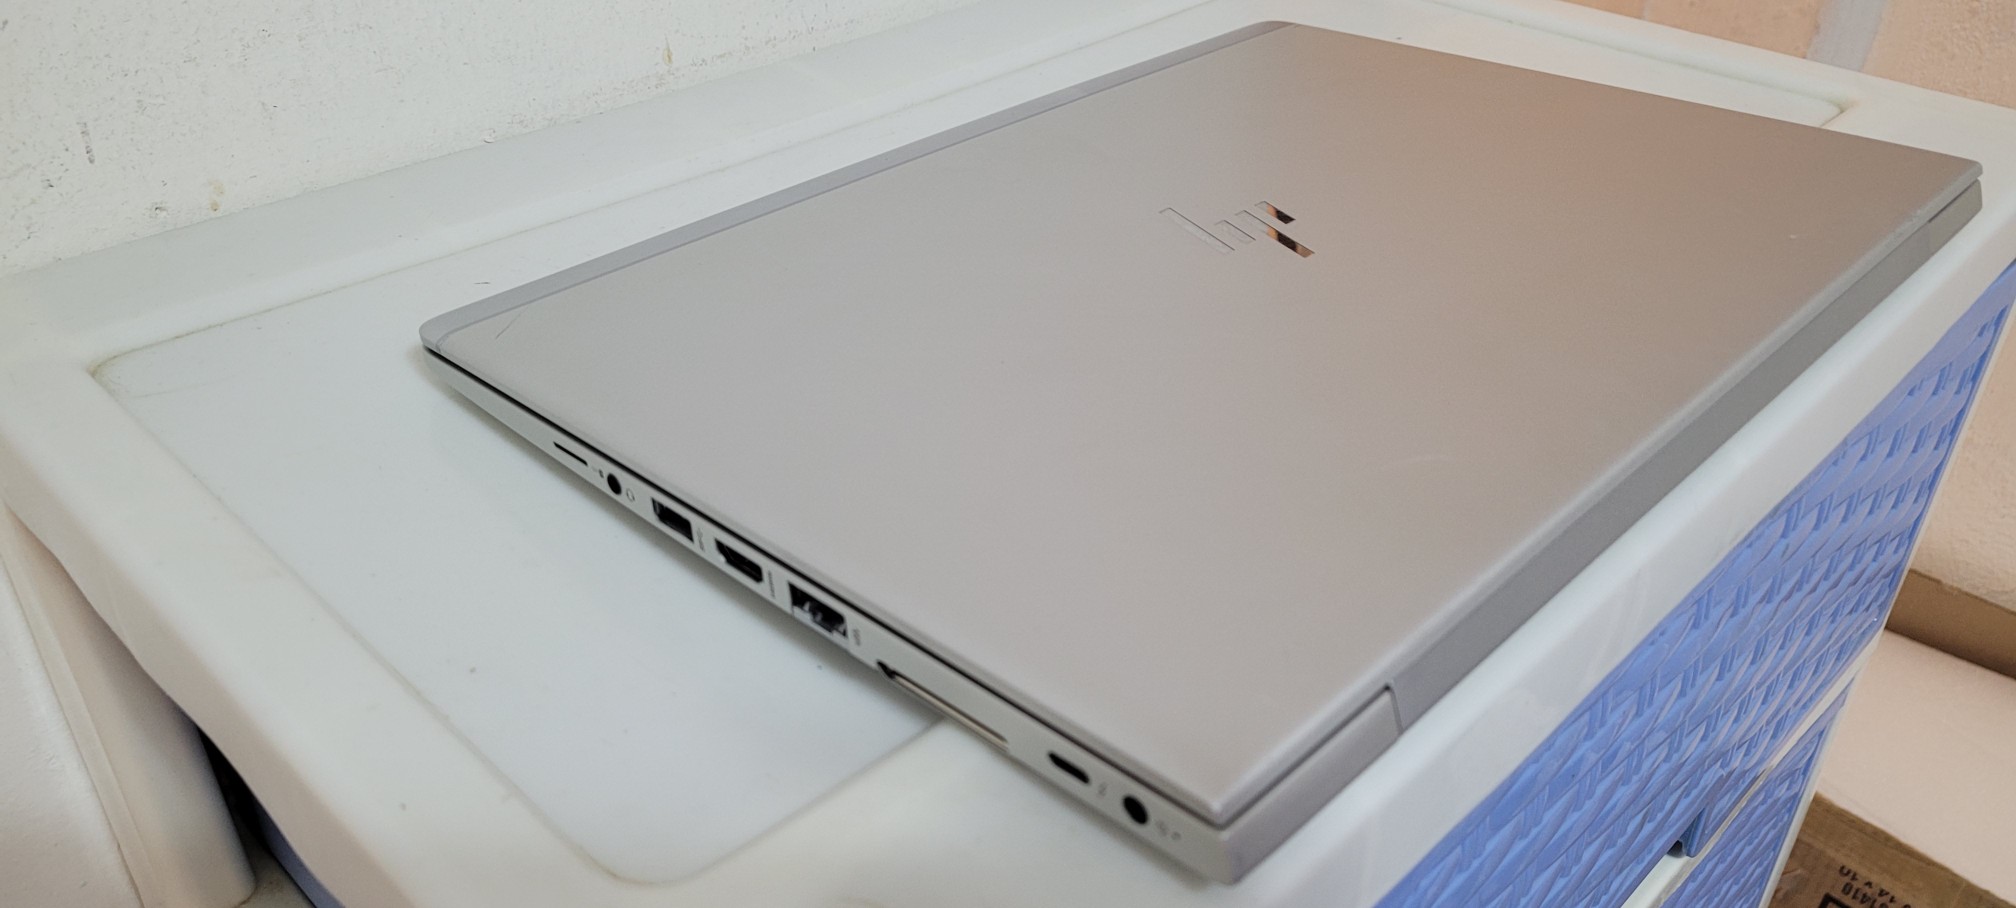 computadoras y laptops - Laptop hp G3 14 Pulg Core i5 7ma Ram 8gb ddr4 Disco 256gb Solido full 2